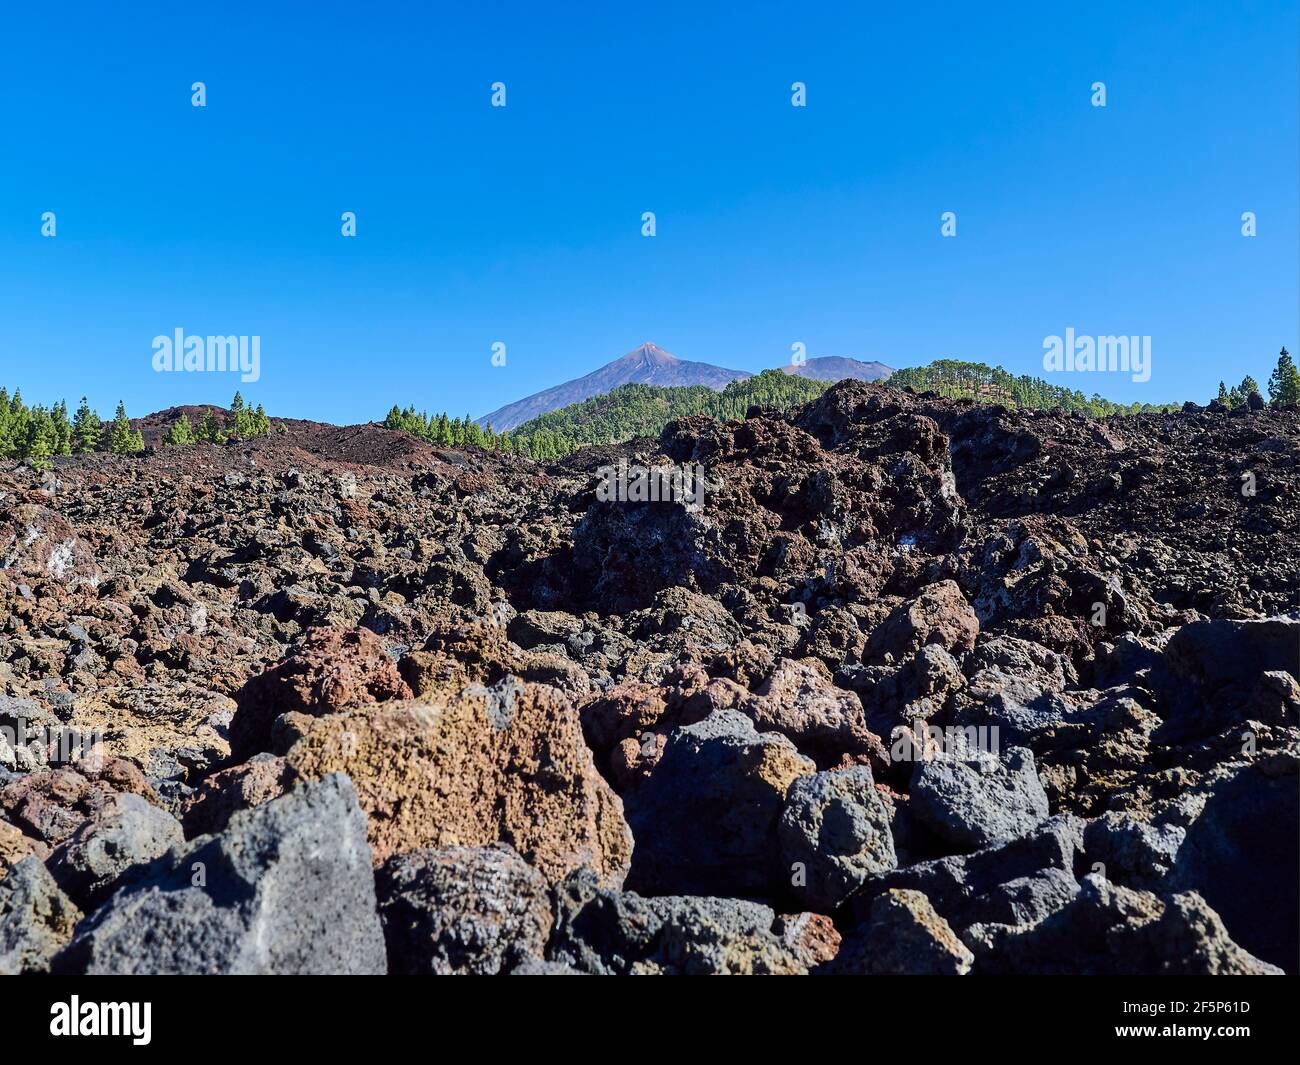 El Teide è un vulcano e la vetta più alta dell'isola di tenerife, Spagna. Una destinazione di viaggio popolare per escursioni e trekking. Foto Stock